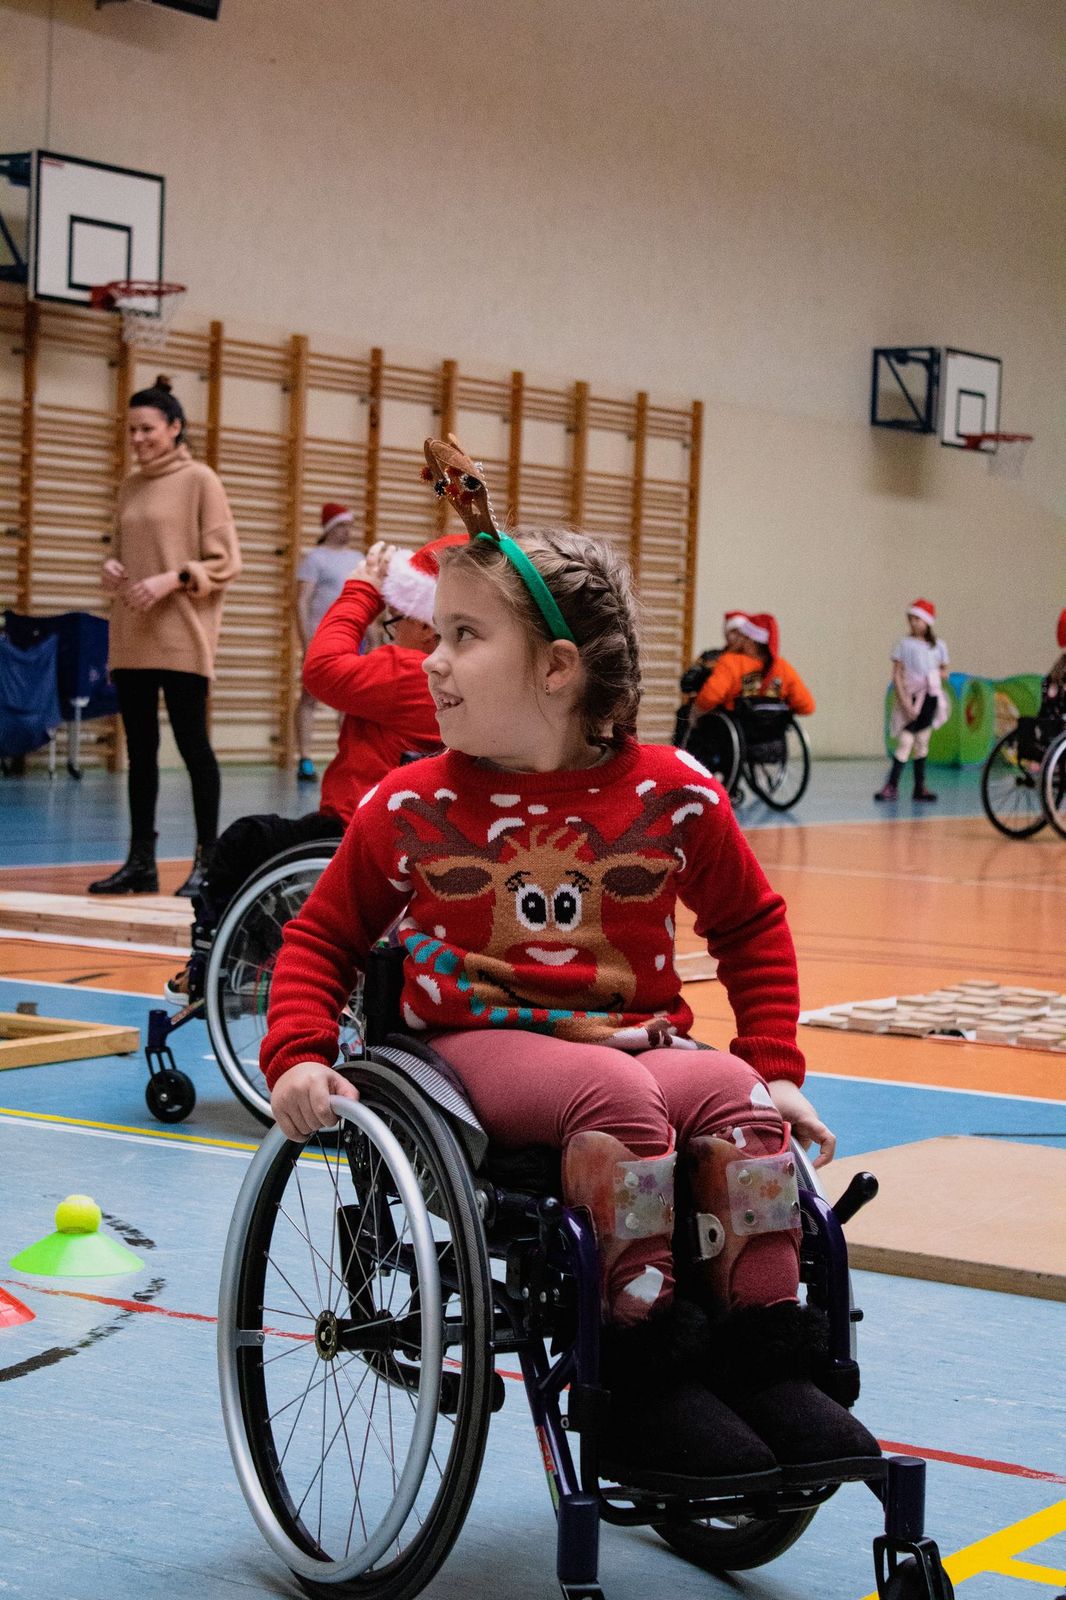 Dziewczynka w świątecznym swetrze i rogach renifera odwraca się do kogoś kto stoi po jej prawej stronie. Dziewczynka porusza się na wózku.